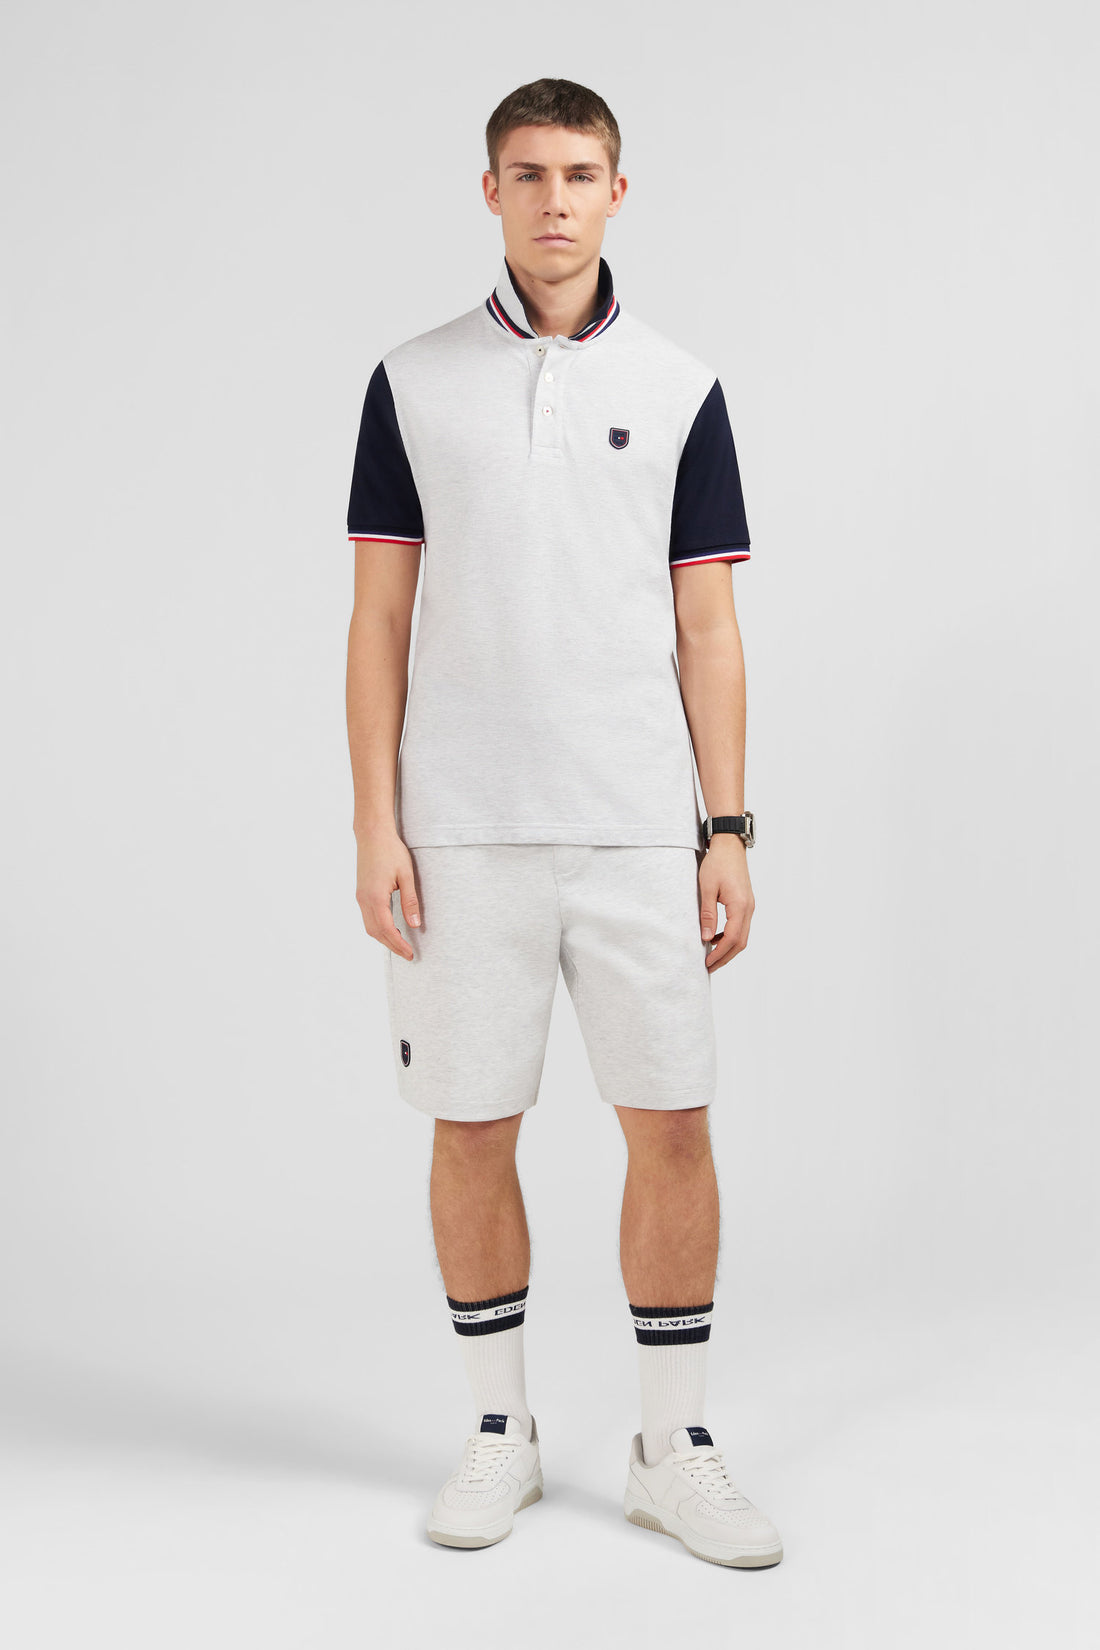 Grey Short-Sleeved Colour-Block Polo Shirt_E24MAIPC0010_GRC7_01